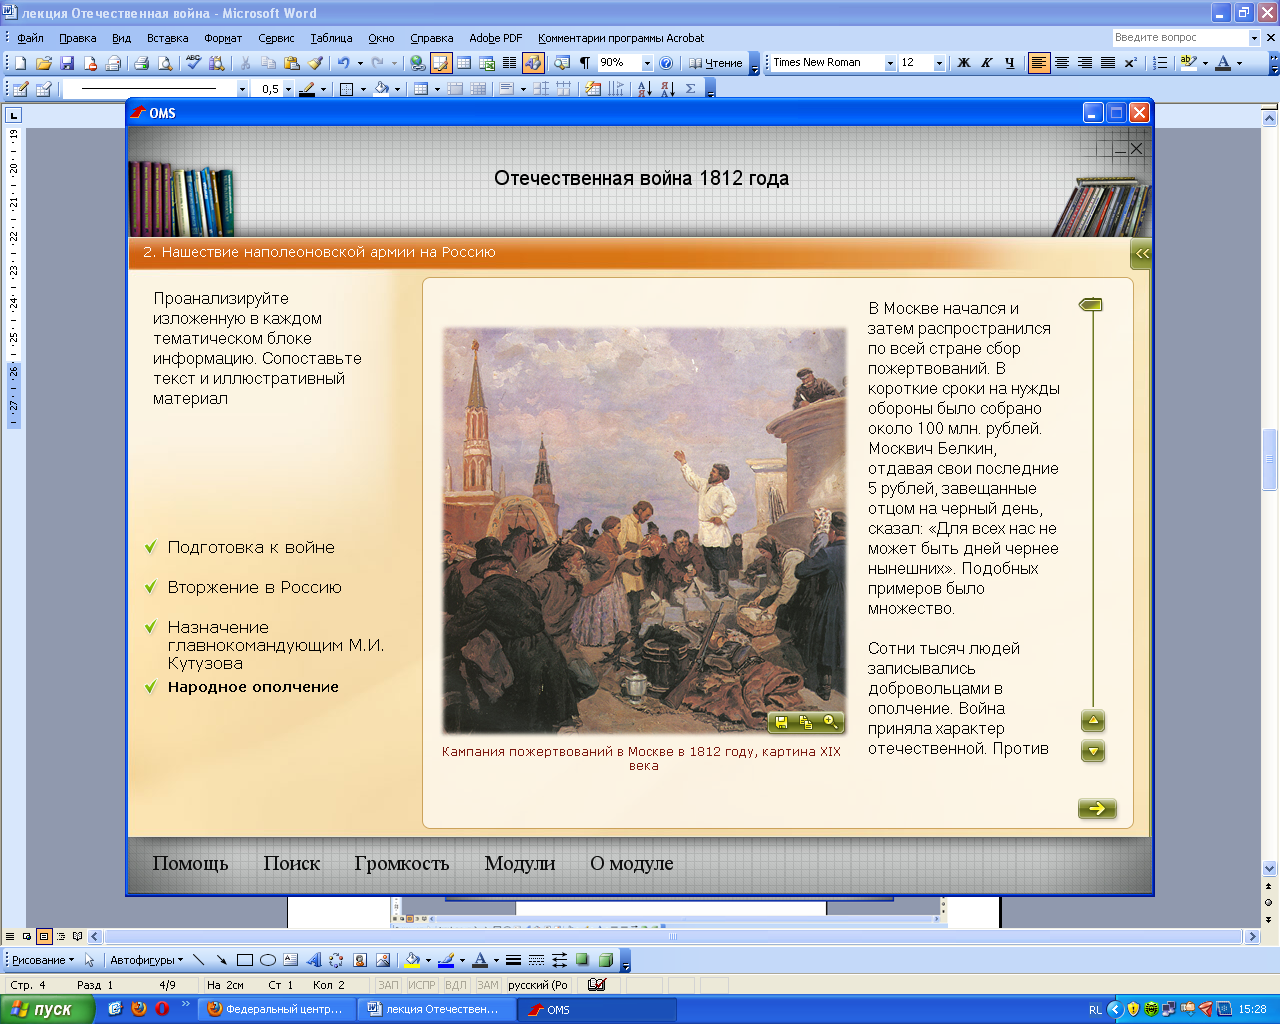 Конспект урока истории 8 класс по теме Отечественная война 1812 года